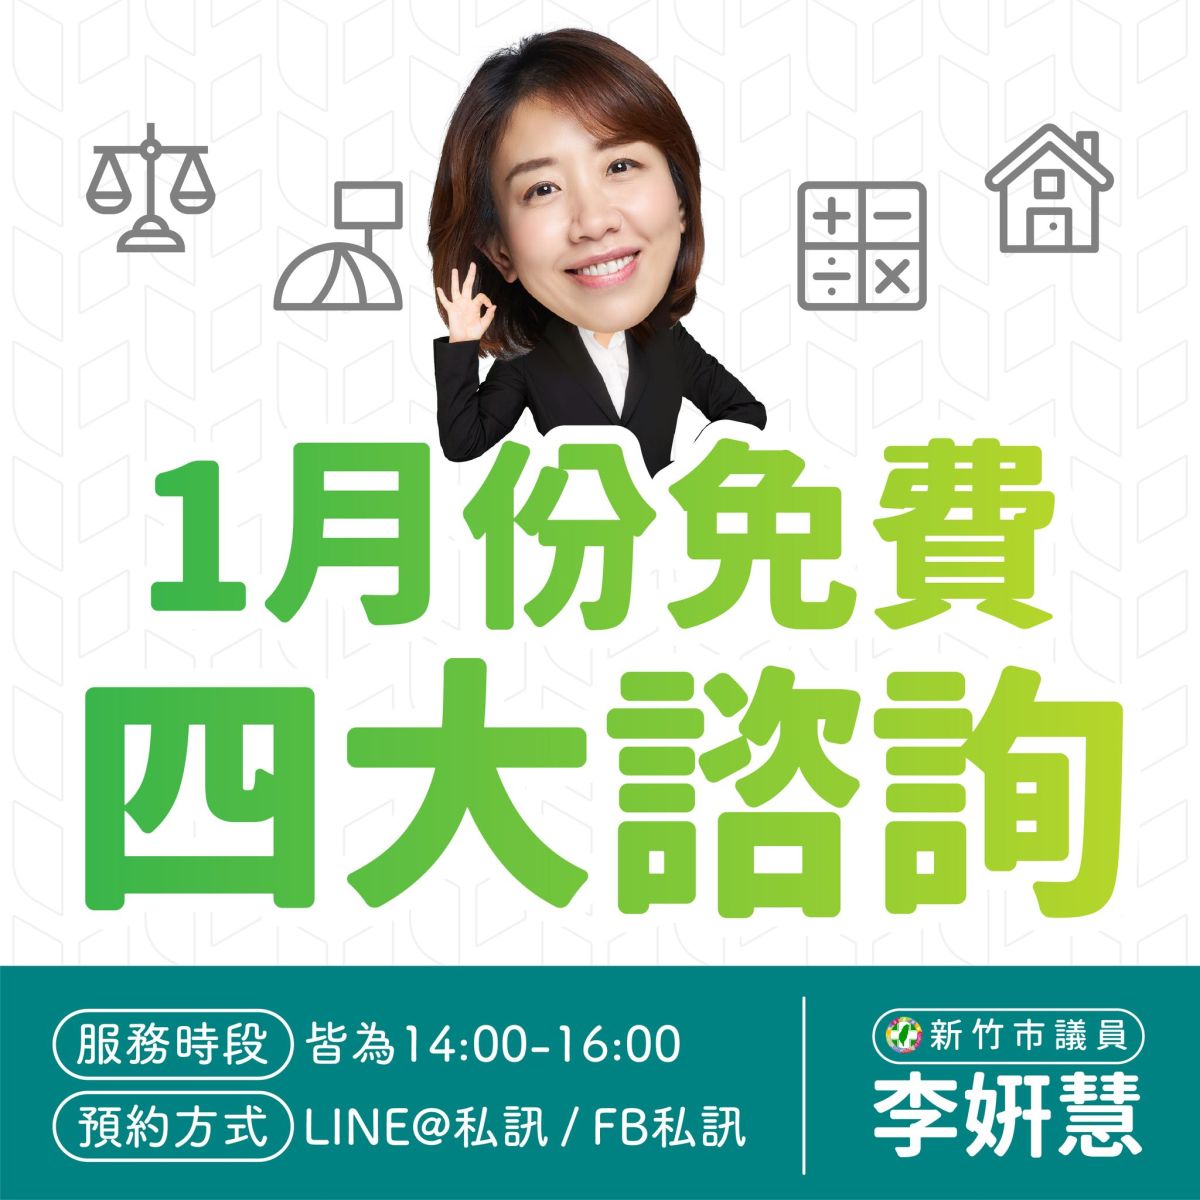 竹市議員李妍慧 提供法律地政會計建築免費諮詢服務
